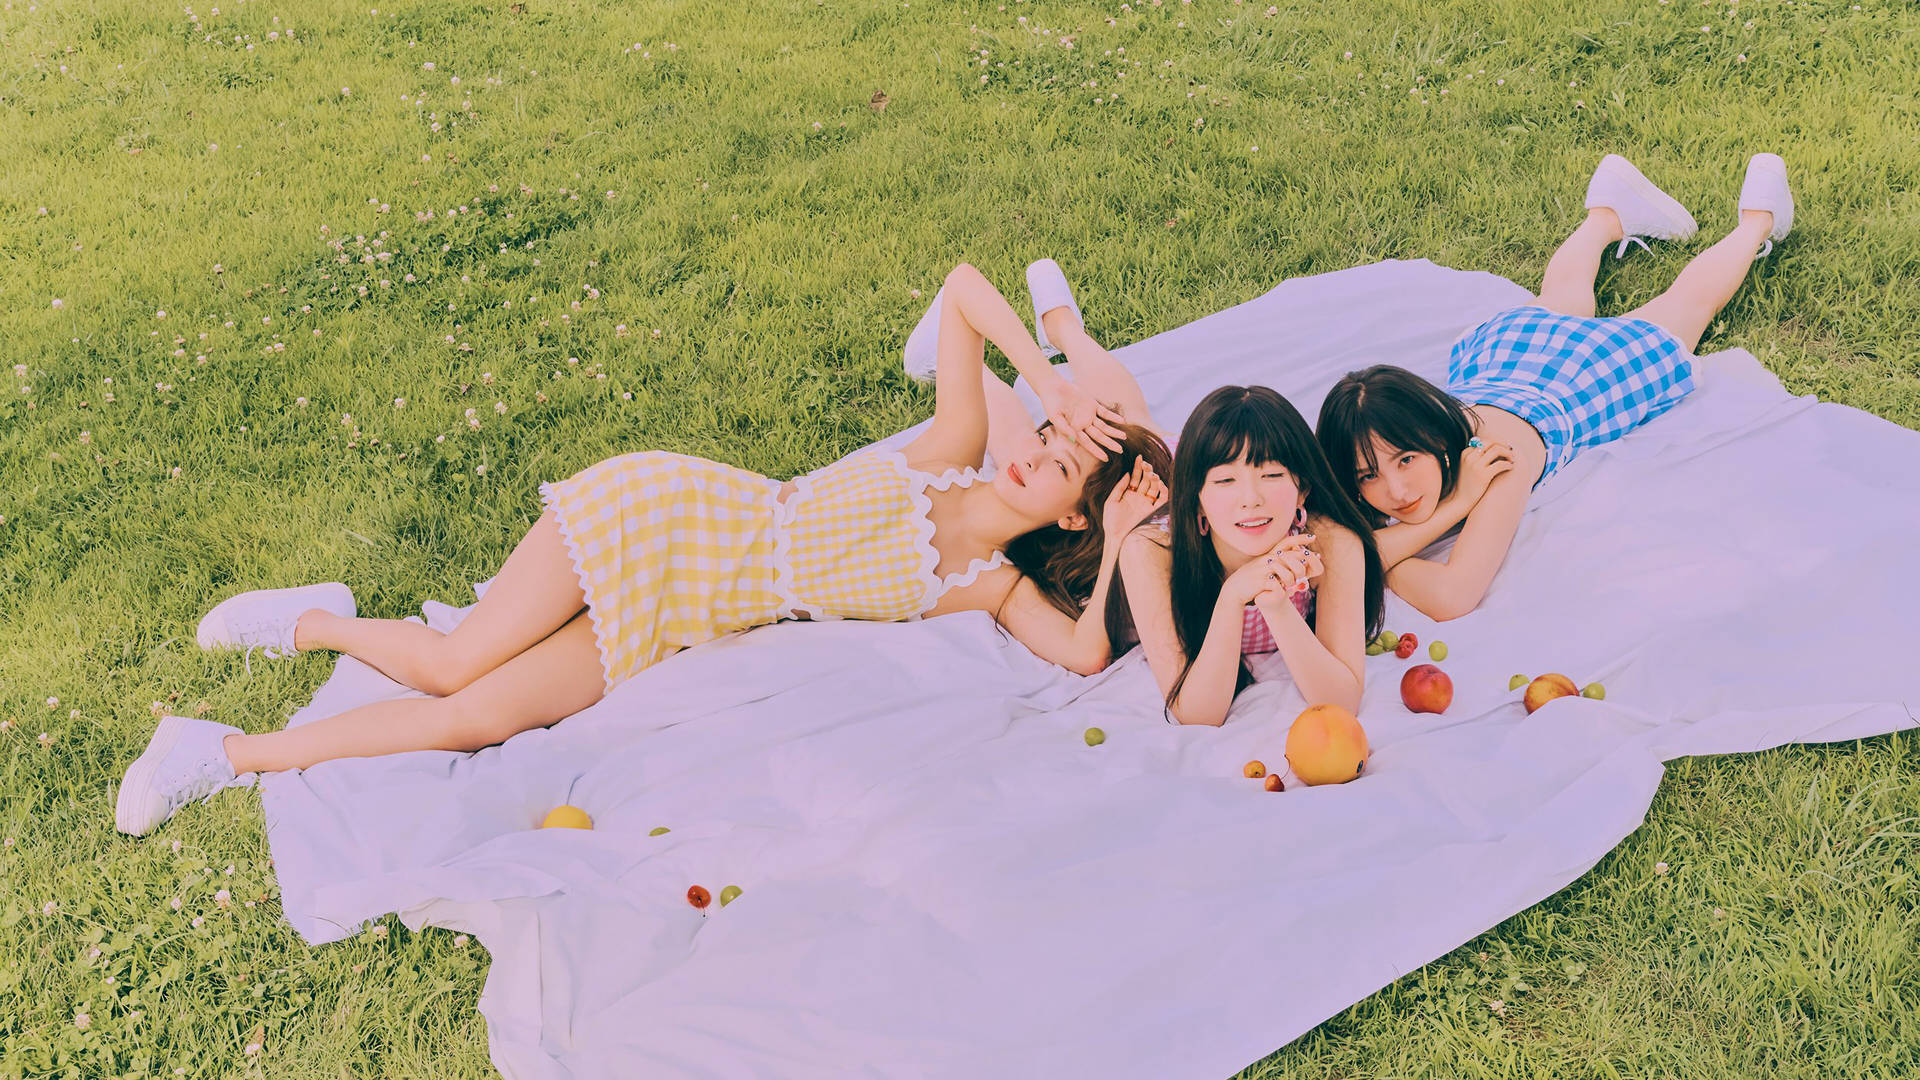 Red Velvet Summer Photoshoot Background